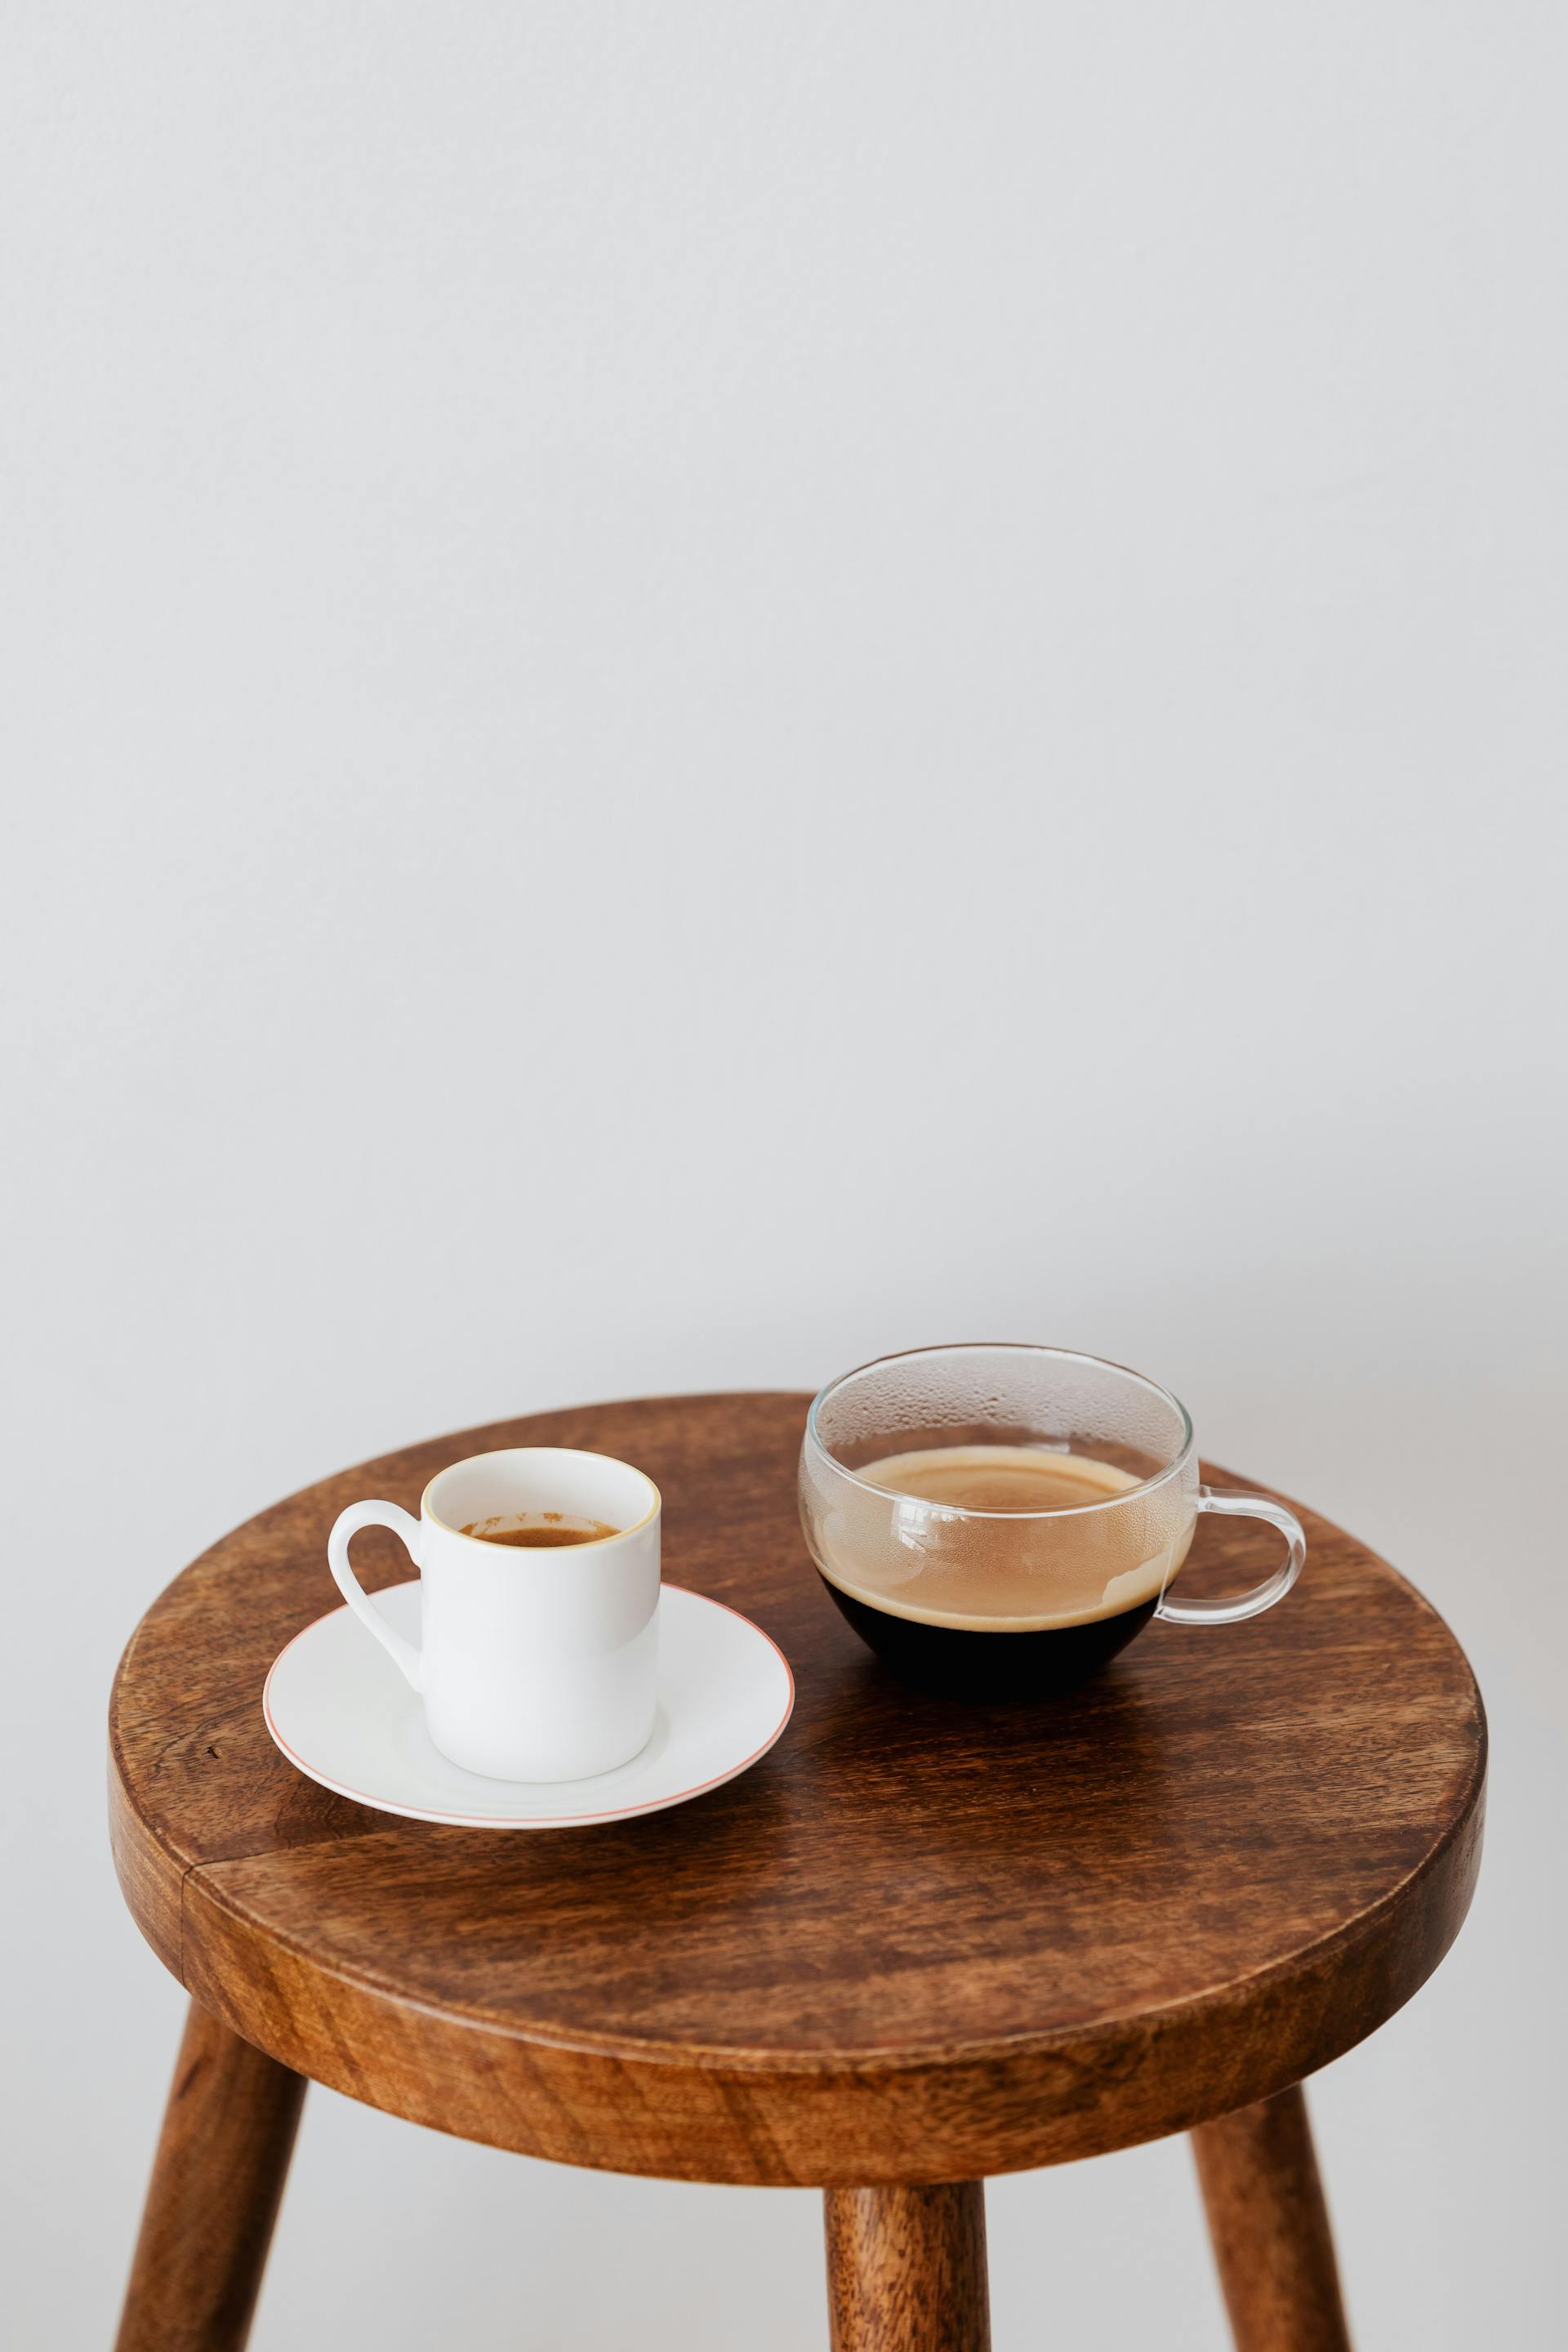 Mugs sur une table | Source : Pexels